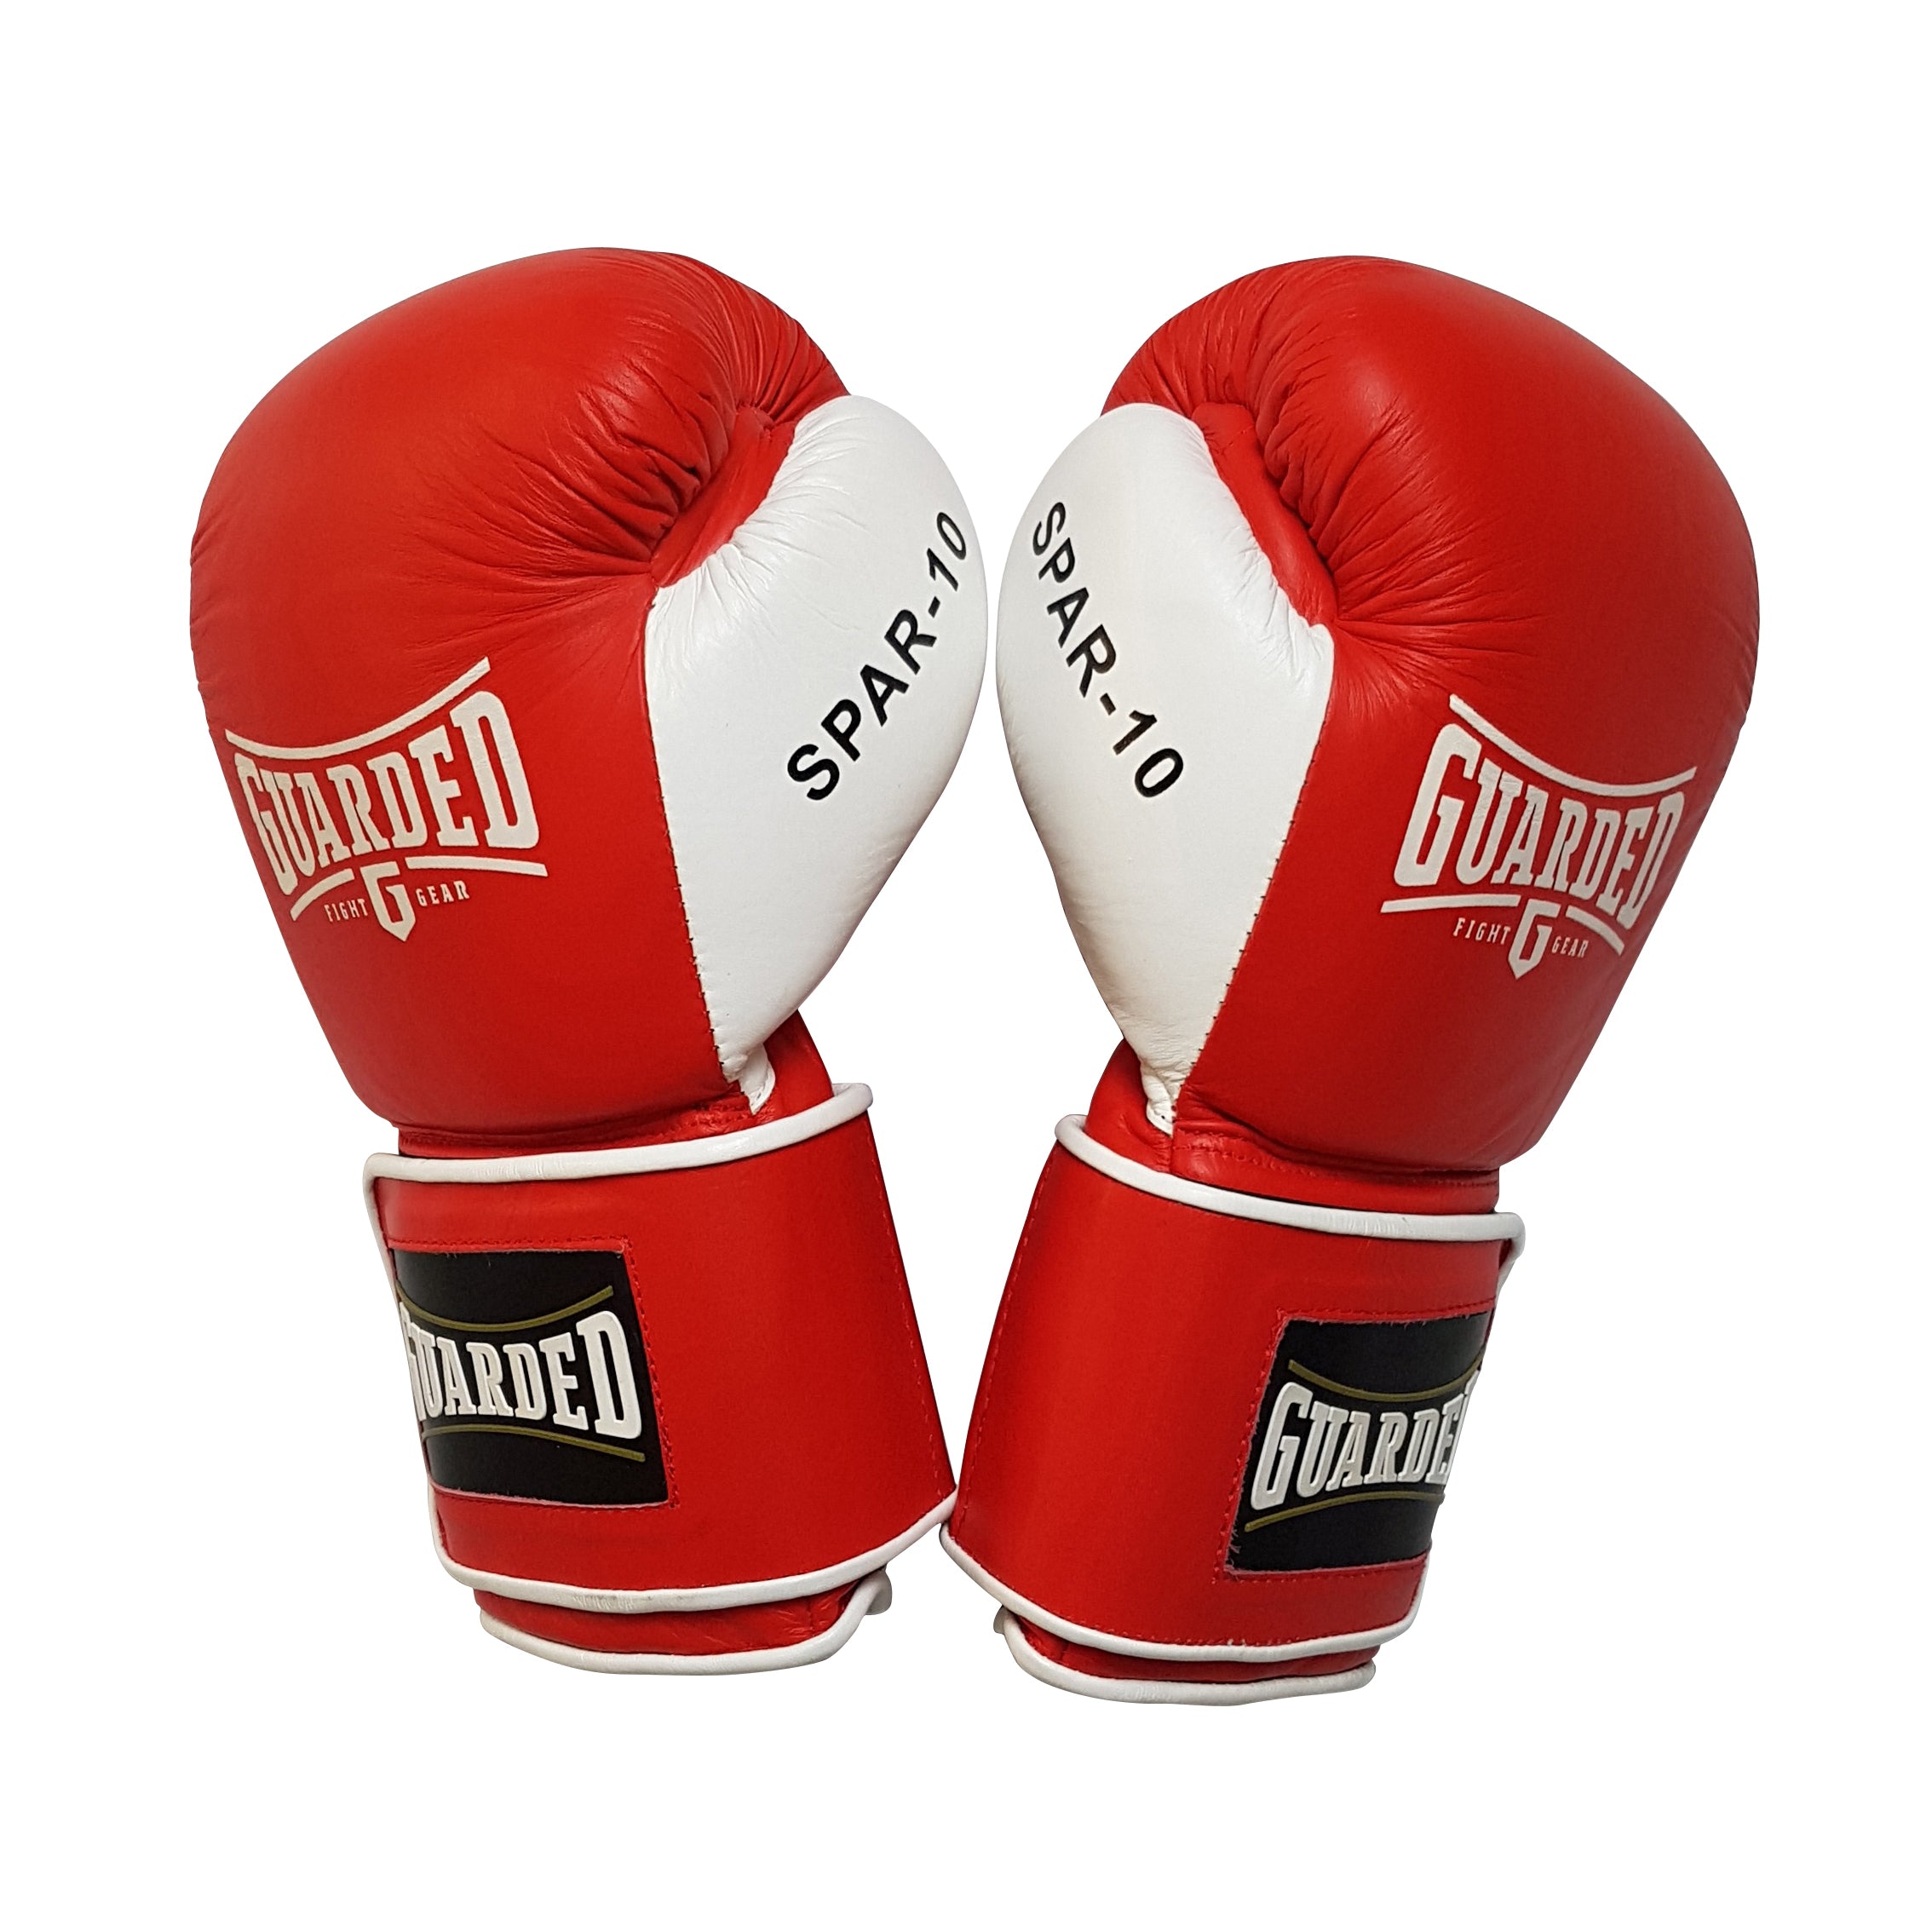 Buy Fight Gear Online in Perth Fight Gear for Sale